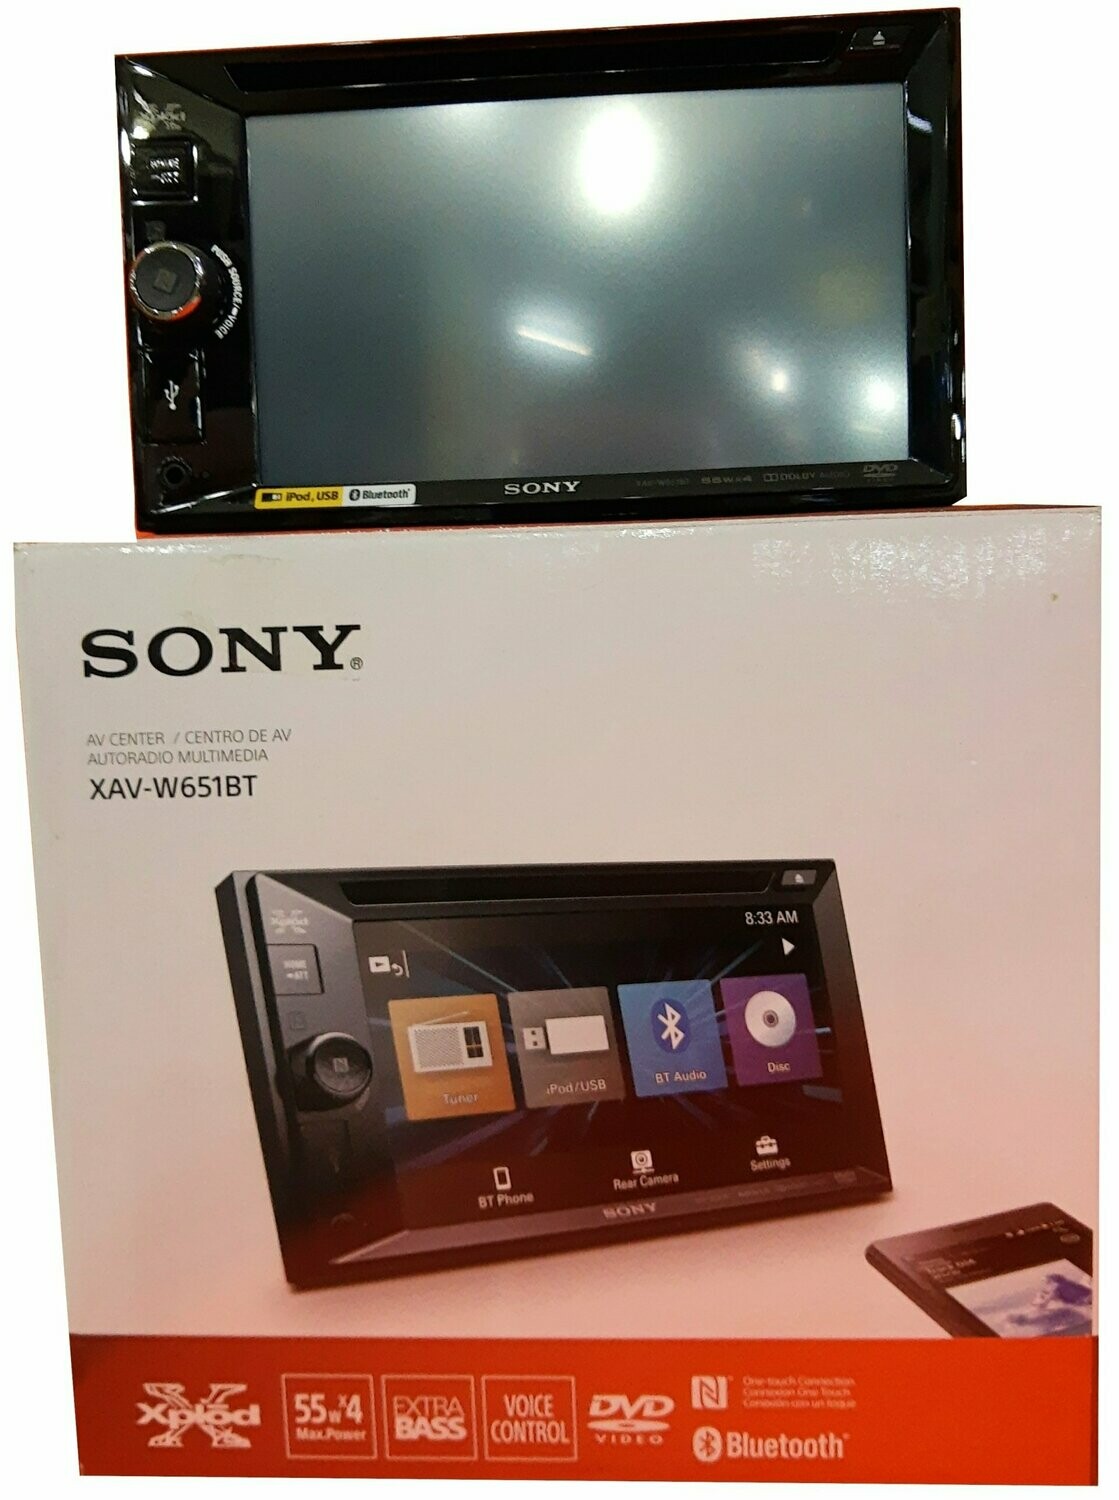 Sony XM-N502 Amplificador Estéreo de 2 Canales para Coche 500W